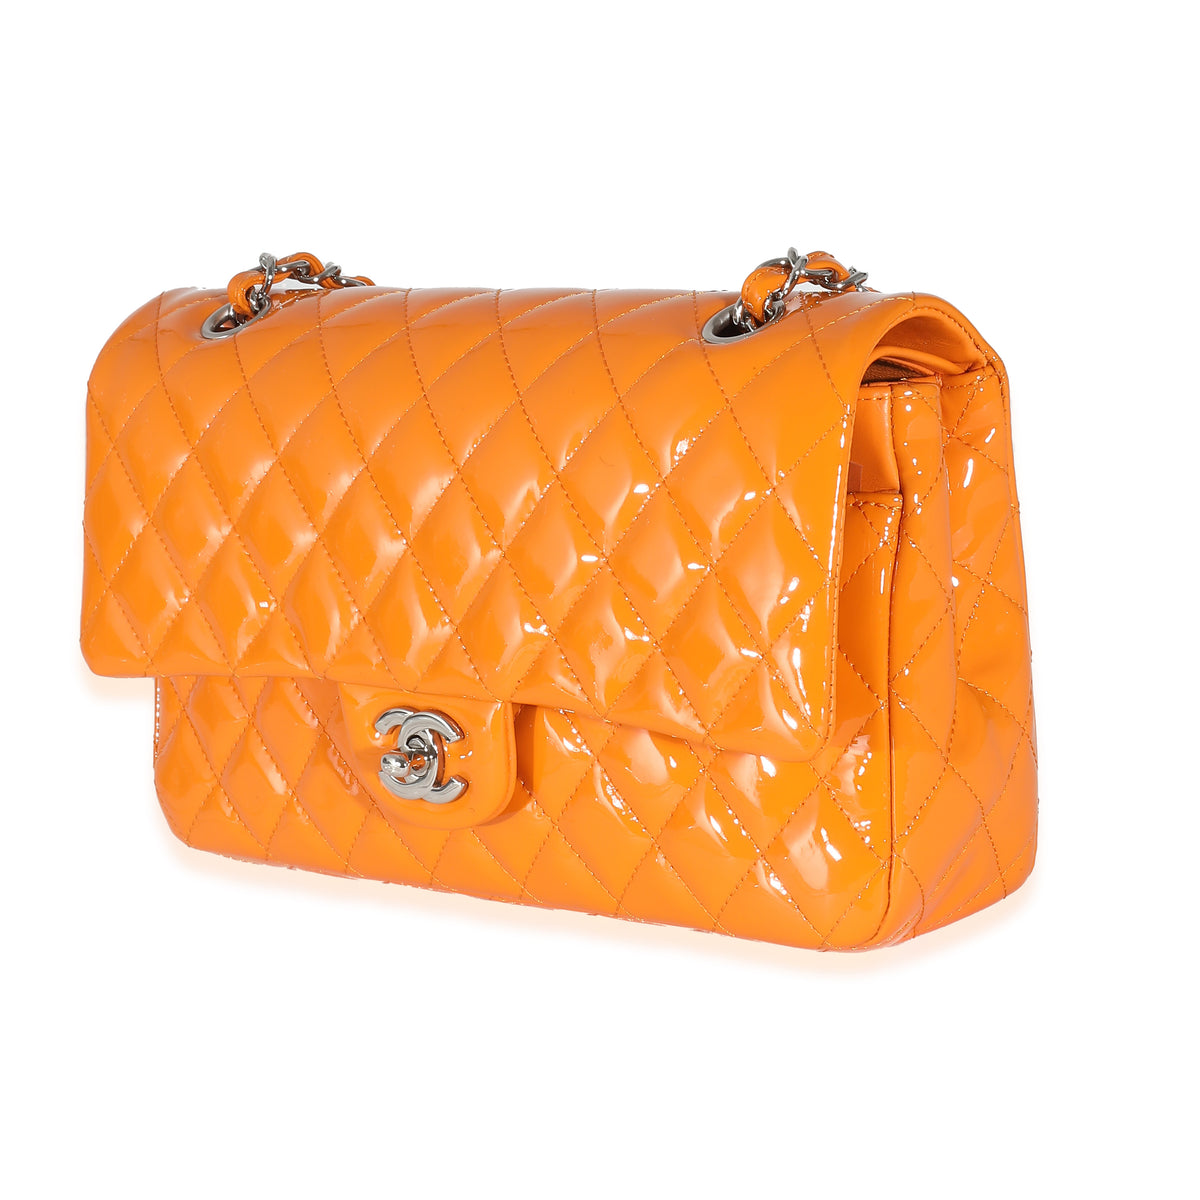 Orange Quilted Patent Medium Classic Double Flap Bag